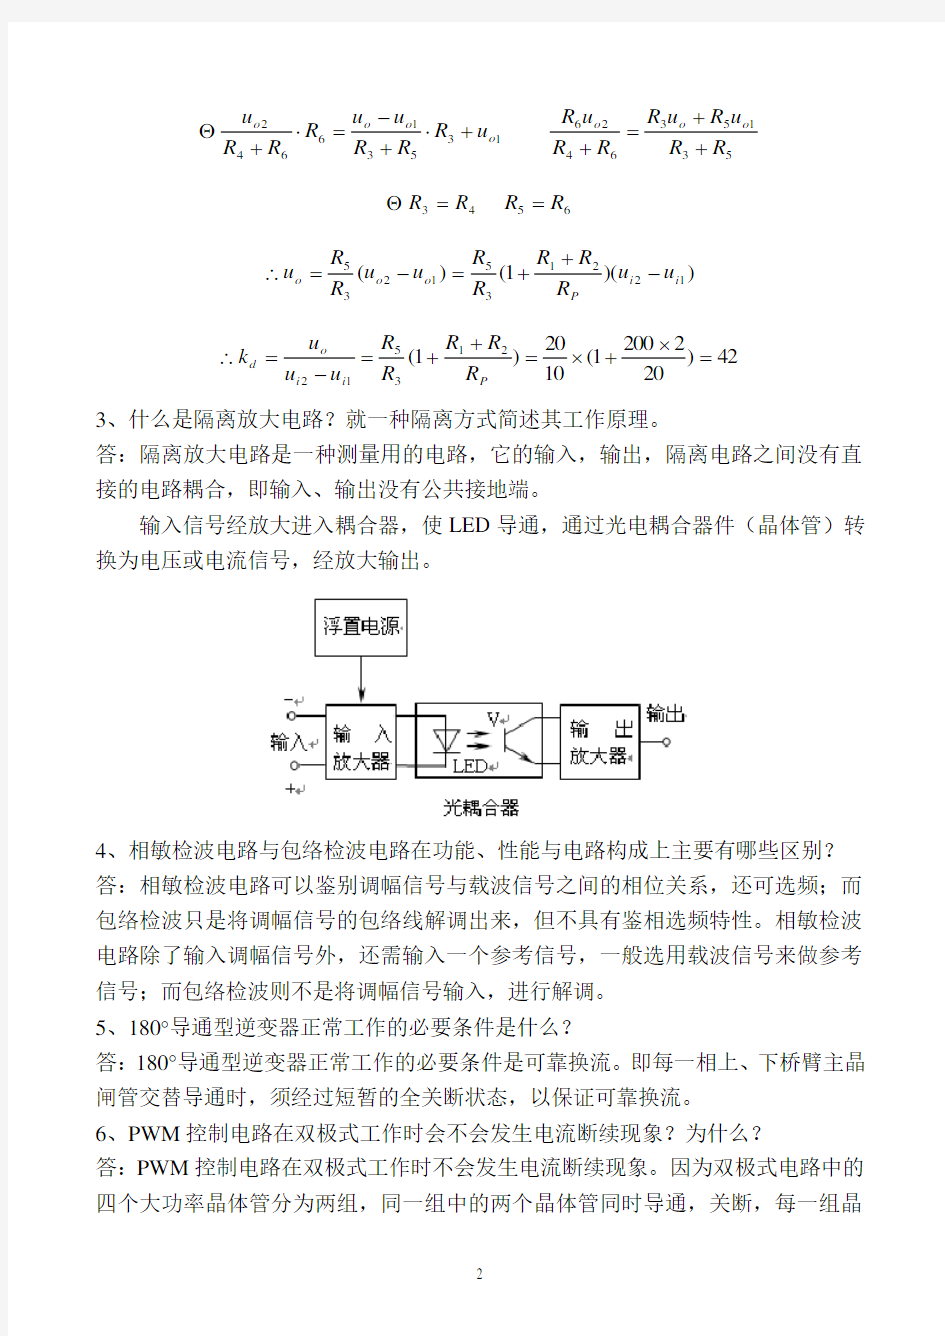 (完整版)天津大学测控电路期末试题及答案2